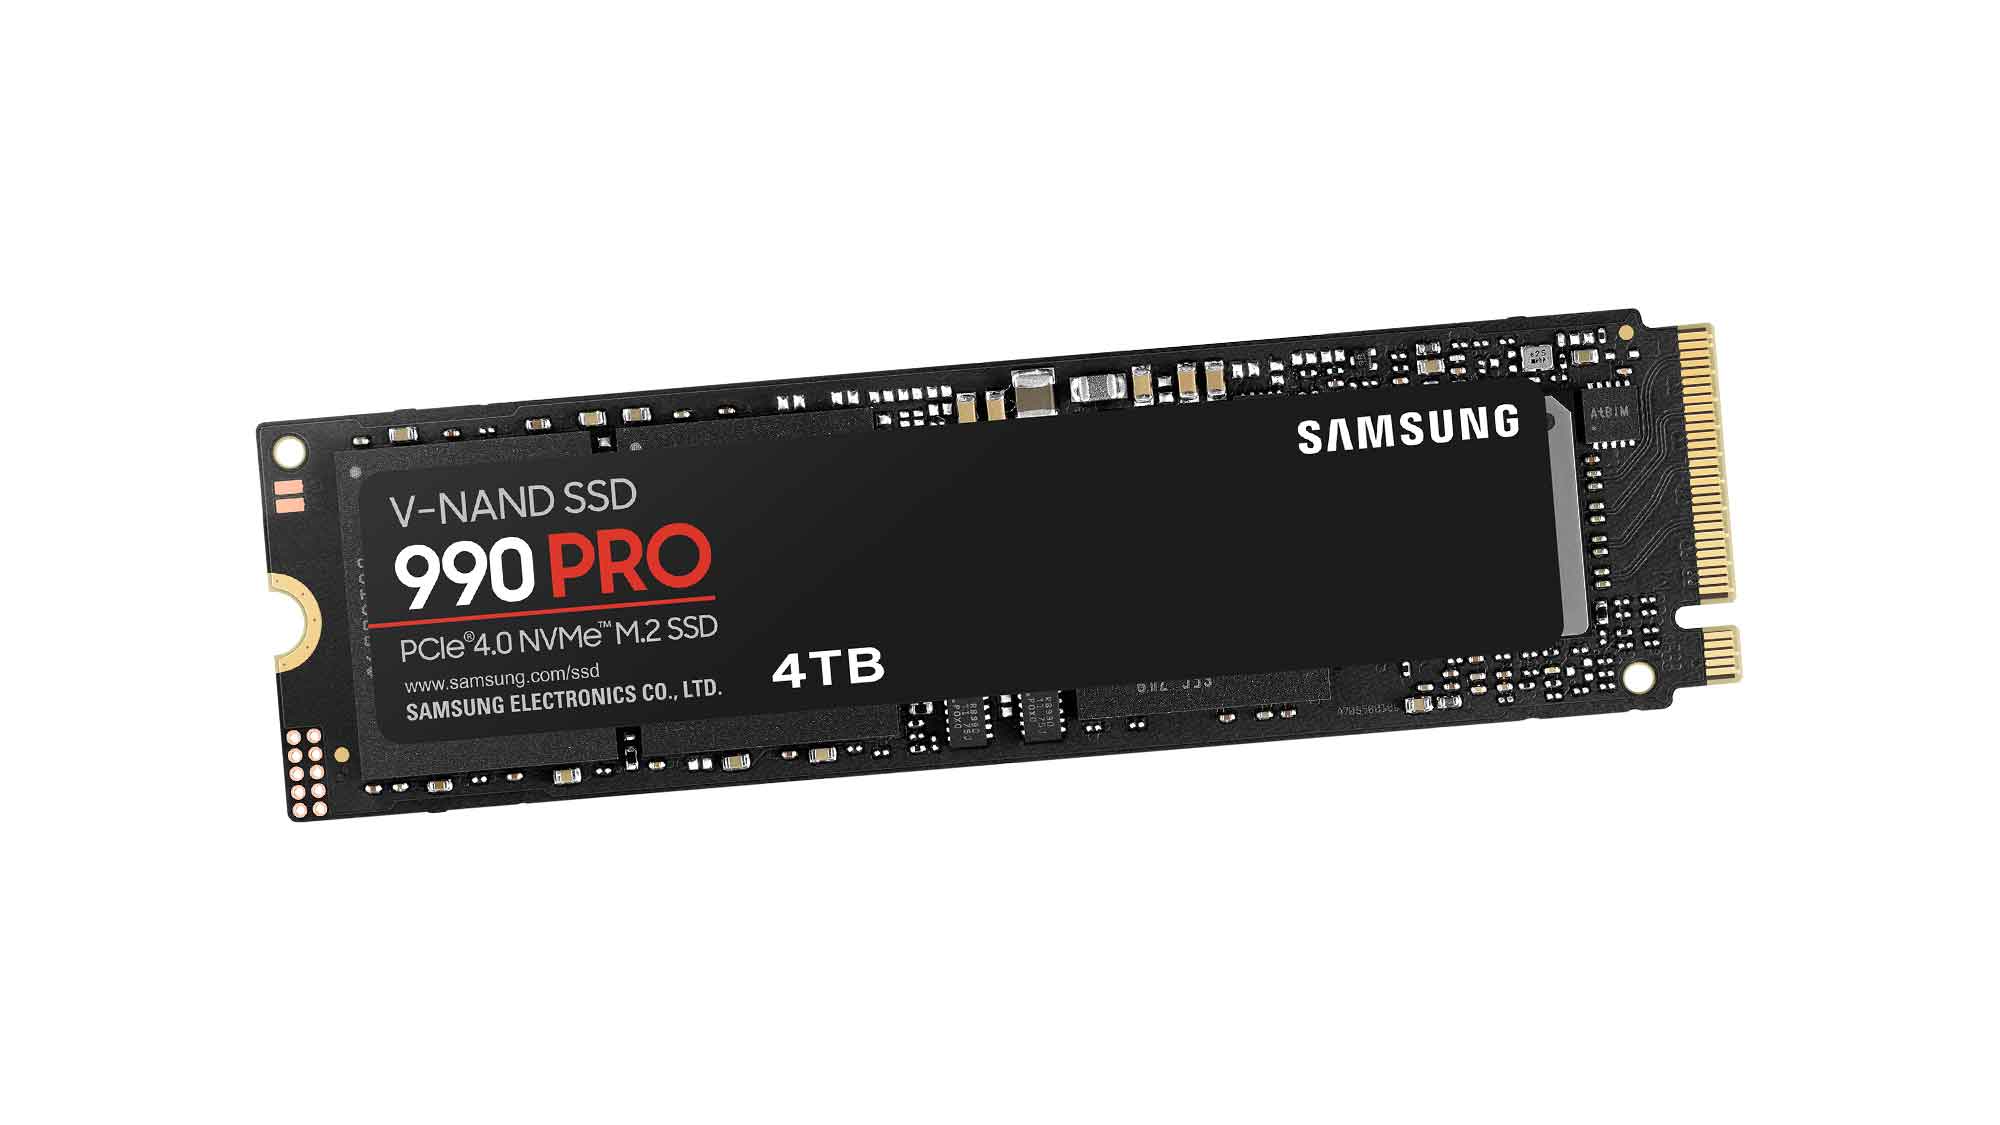 Ab sofort im Handel erhältlich: High Performance SSD 990 PRO mit 4 TB Speicherkapazität